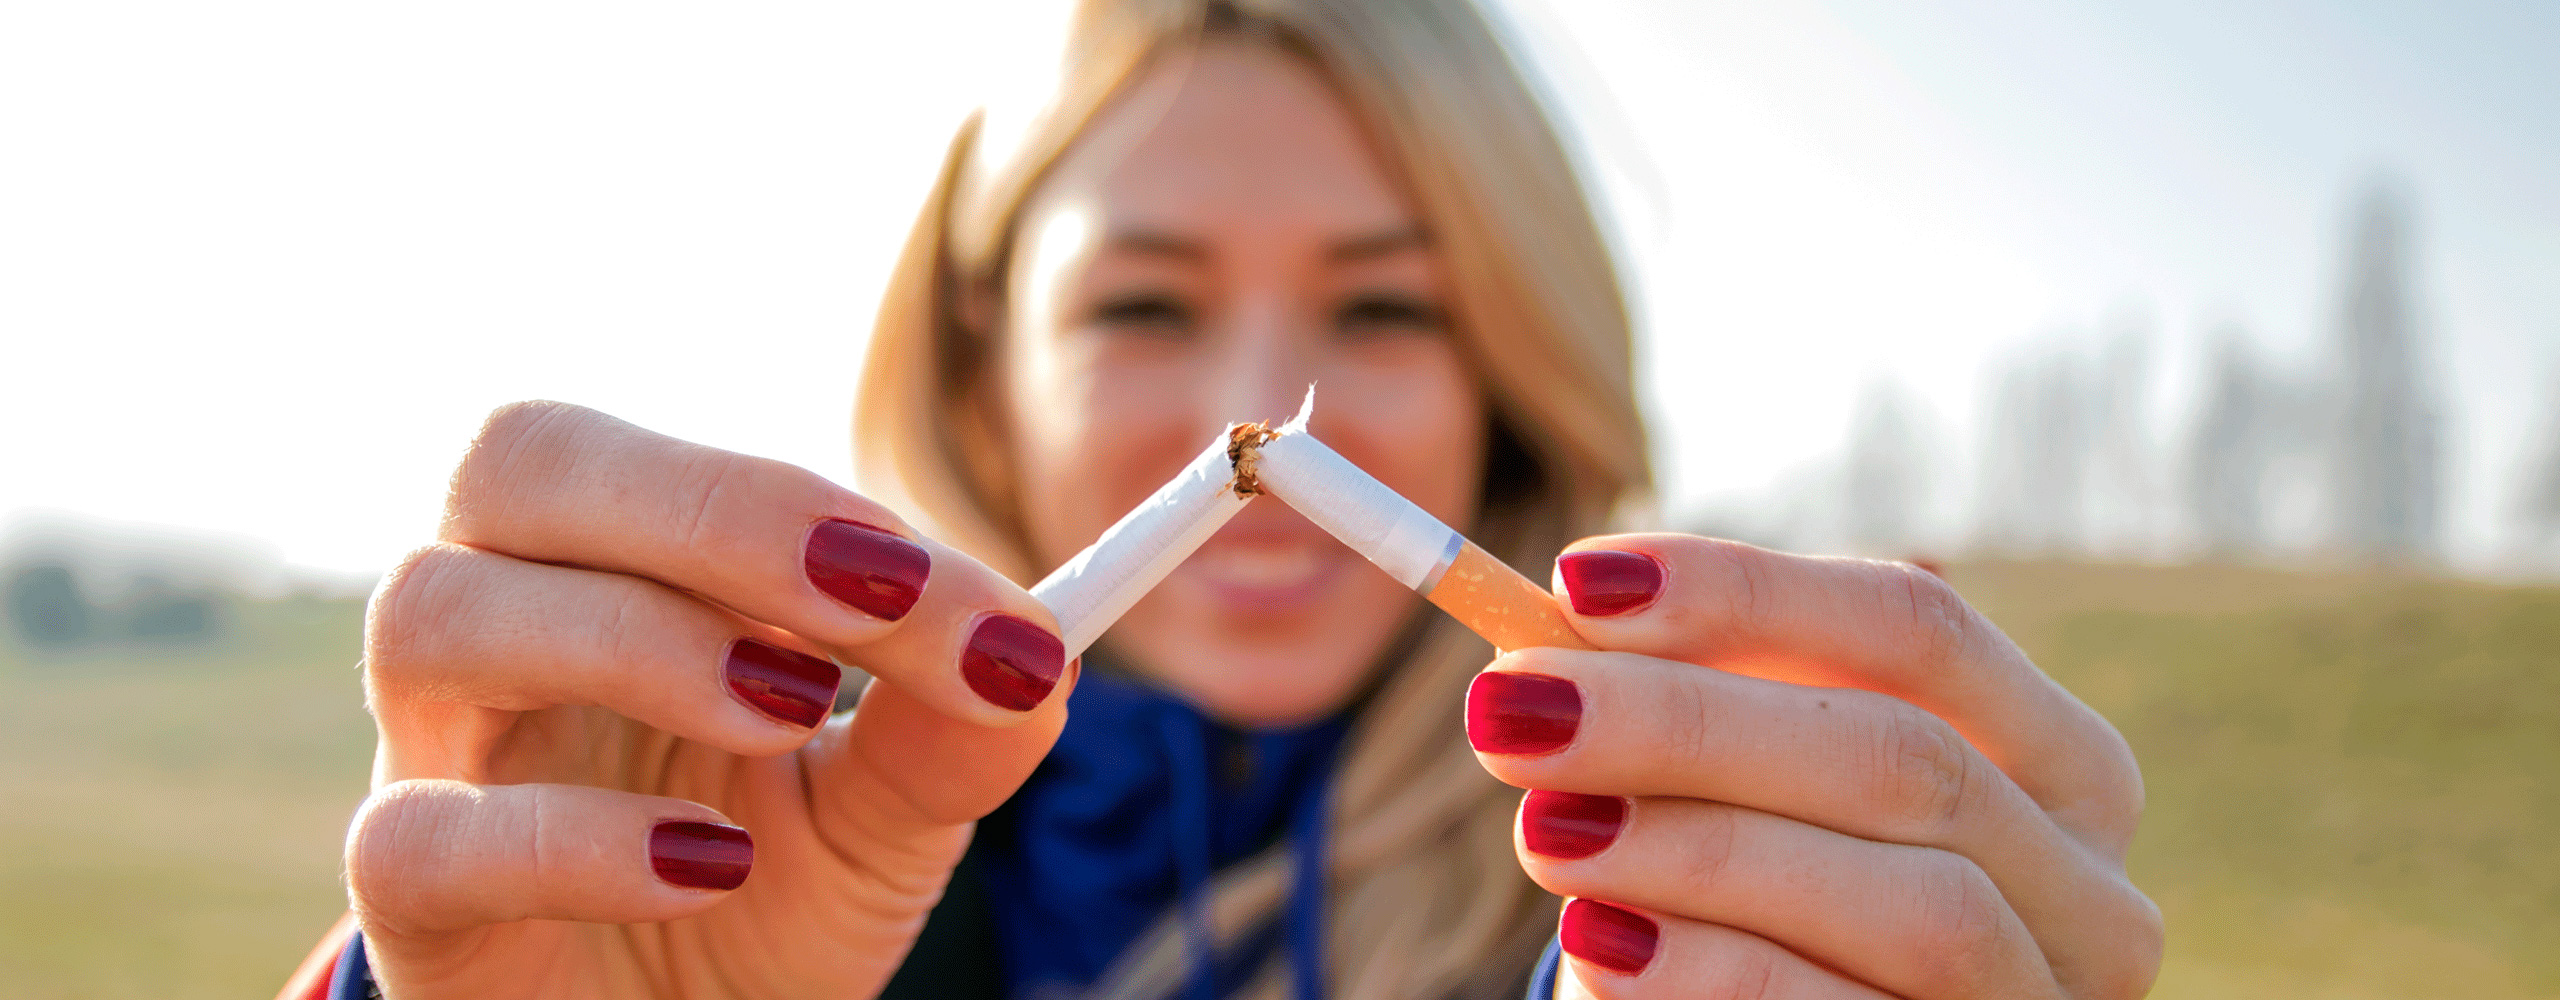 Schwanger mit dem Rauchen aufhören: So klappt's